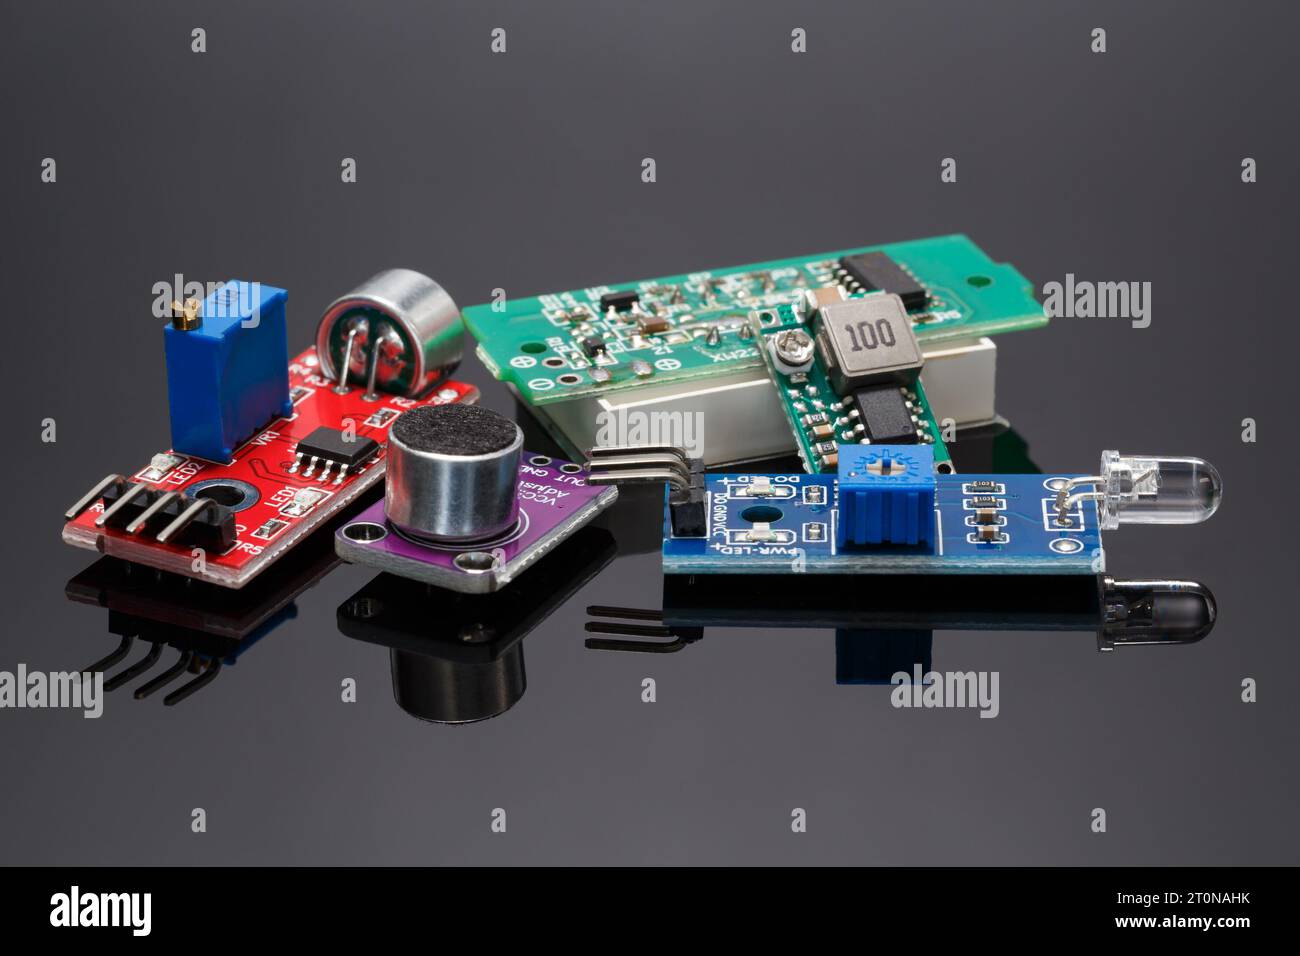 Ein Satz von verschiedenen zusätzlichen Sensormodulen für Projekte mit Arduino. Nahaufnahme auf grauem Hintergrund. Stockfoto